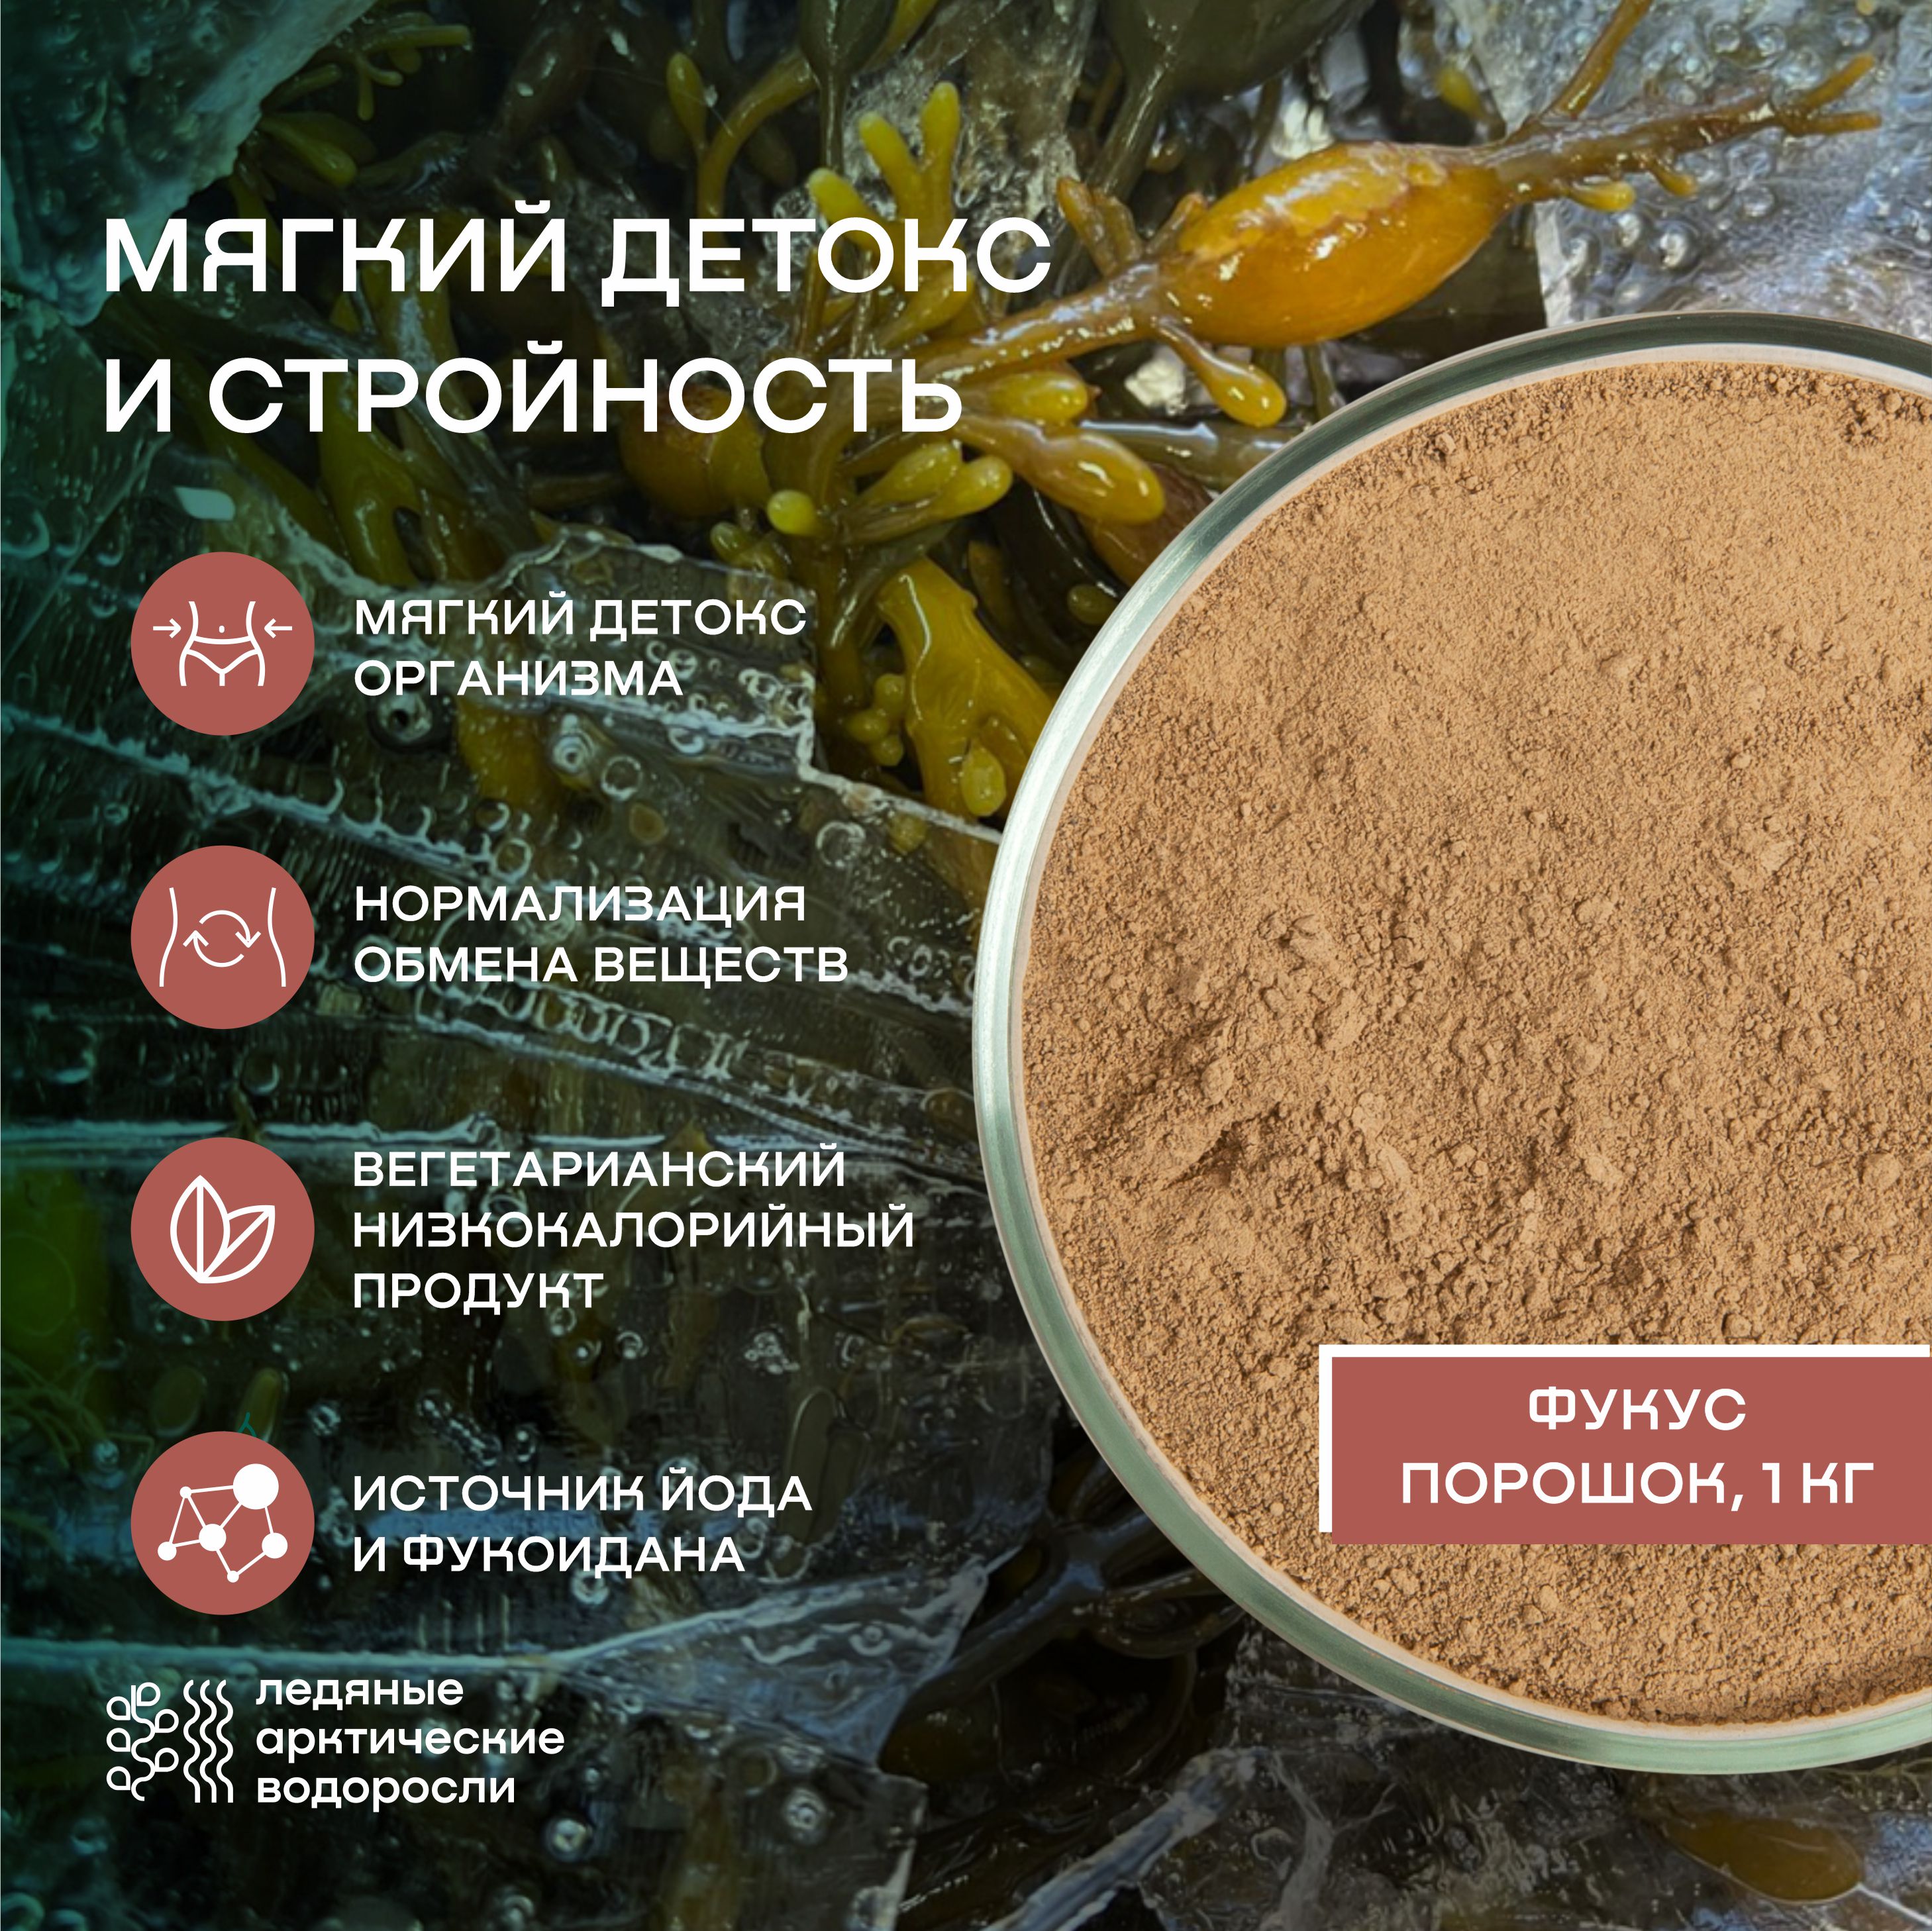 Водоросли беломорские  пищевые фукус порошок - 1 кг